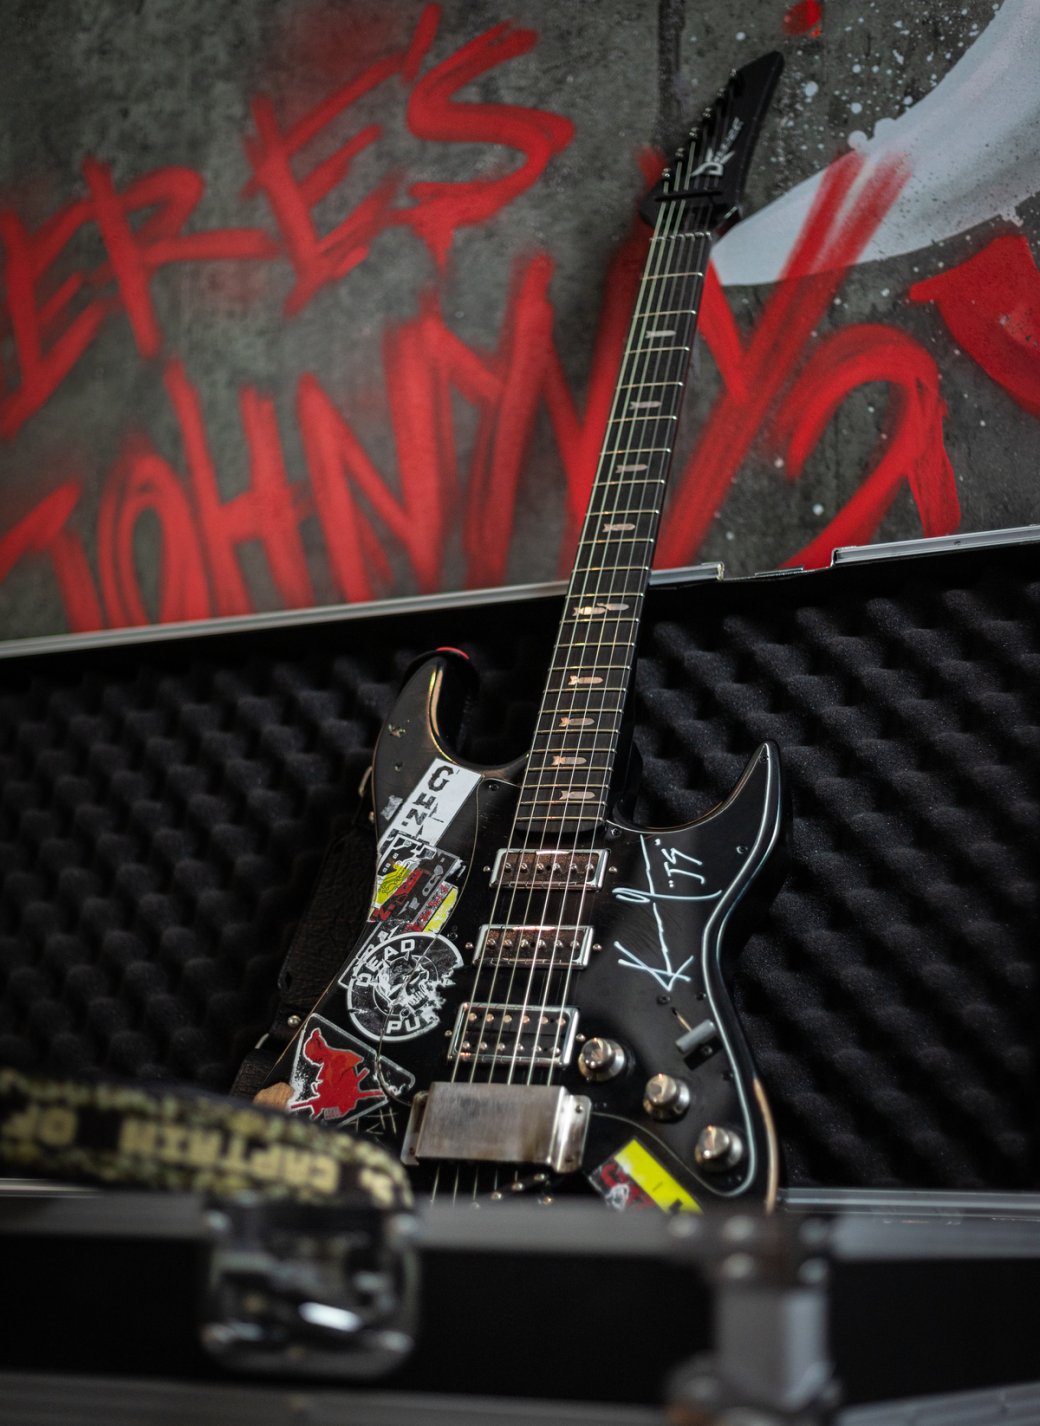 Киану Ривз подписал подарочную гитару для ветерана CD Projekt RED | - Изображение 0